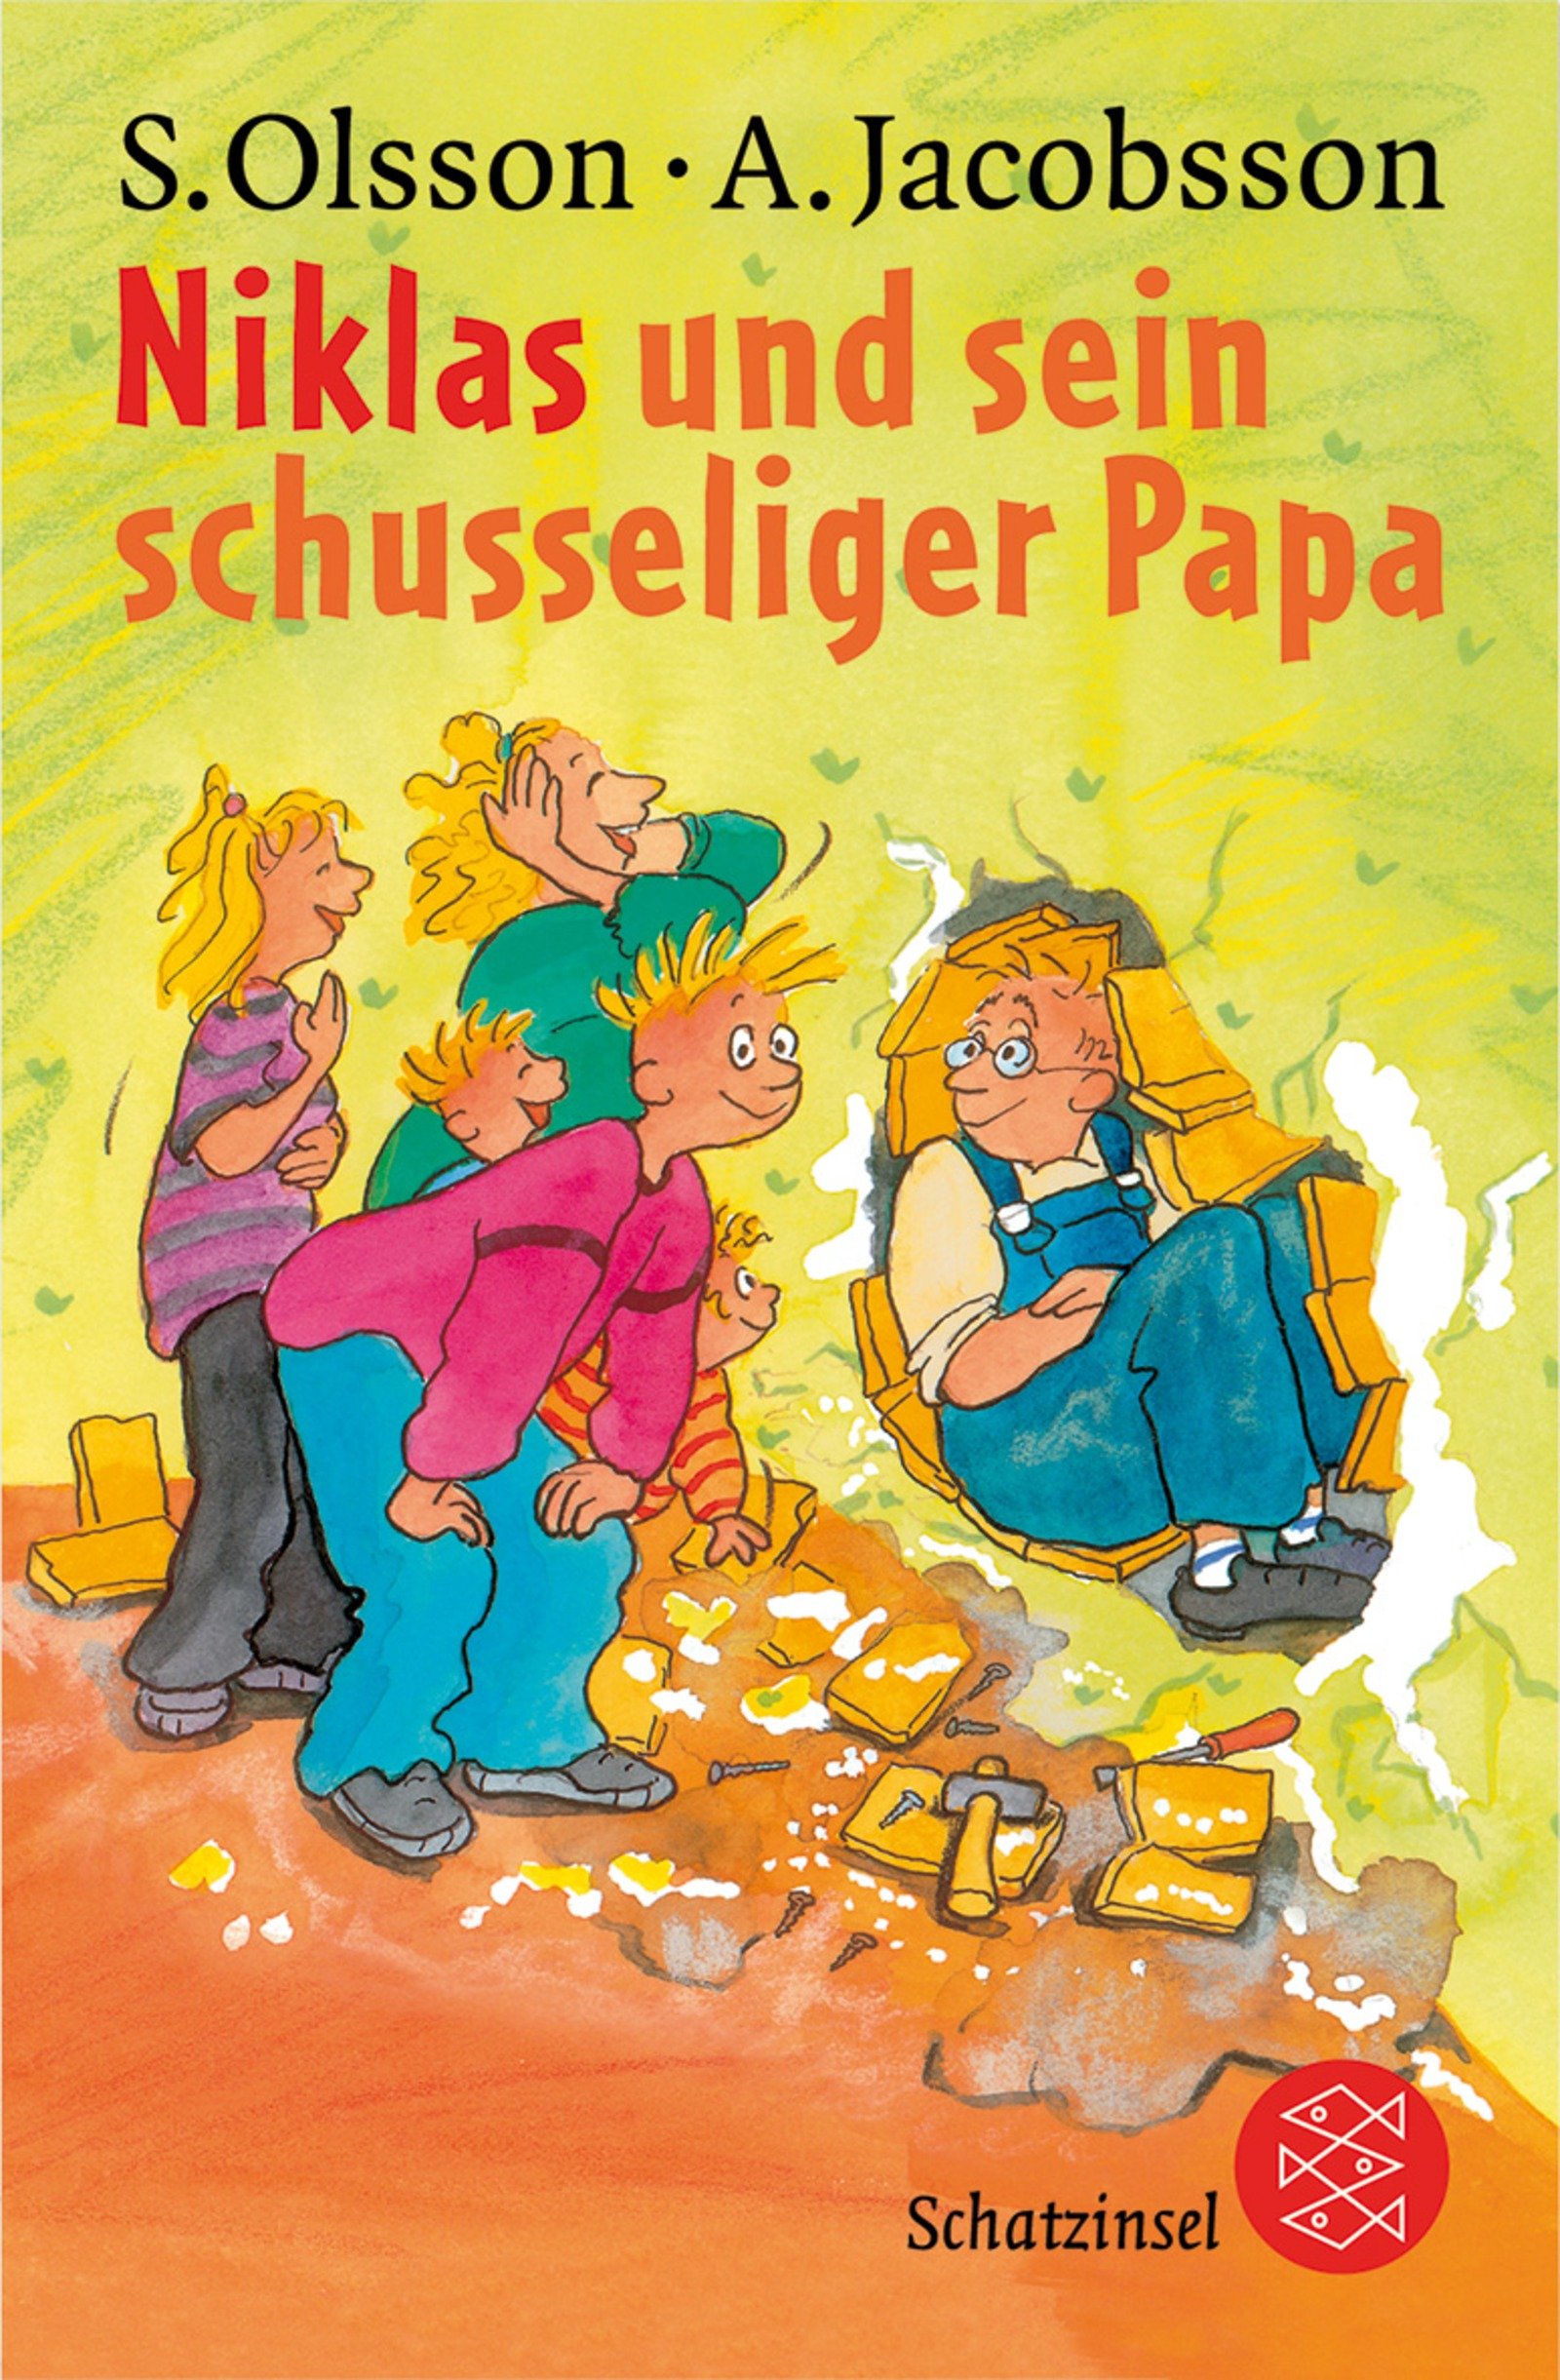 Niklas und sein schusseliger Papa (Fischer Schatzinsel) - Olsson, Sören, Anders Jacobsson und Silke Brix